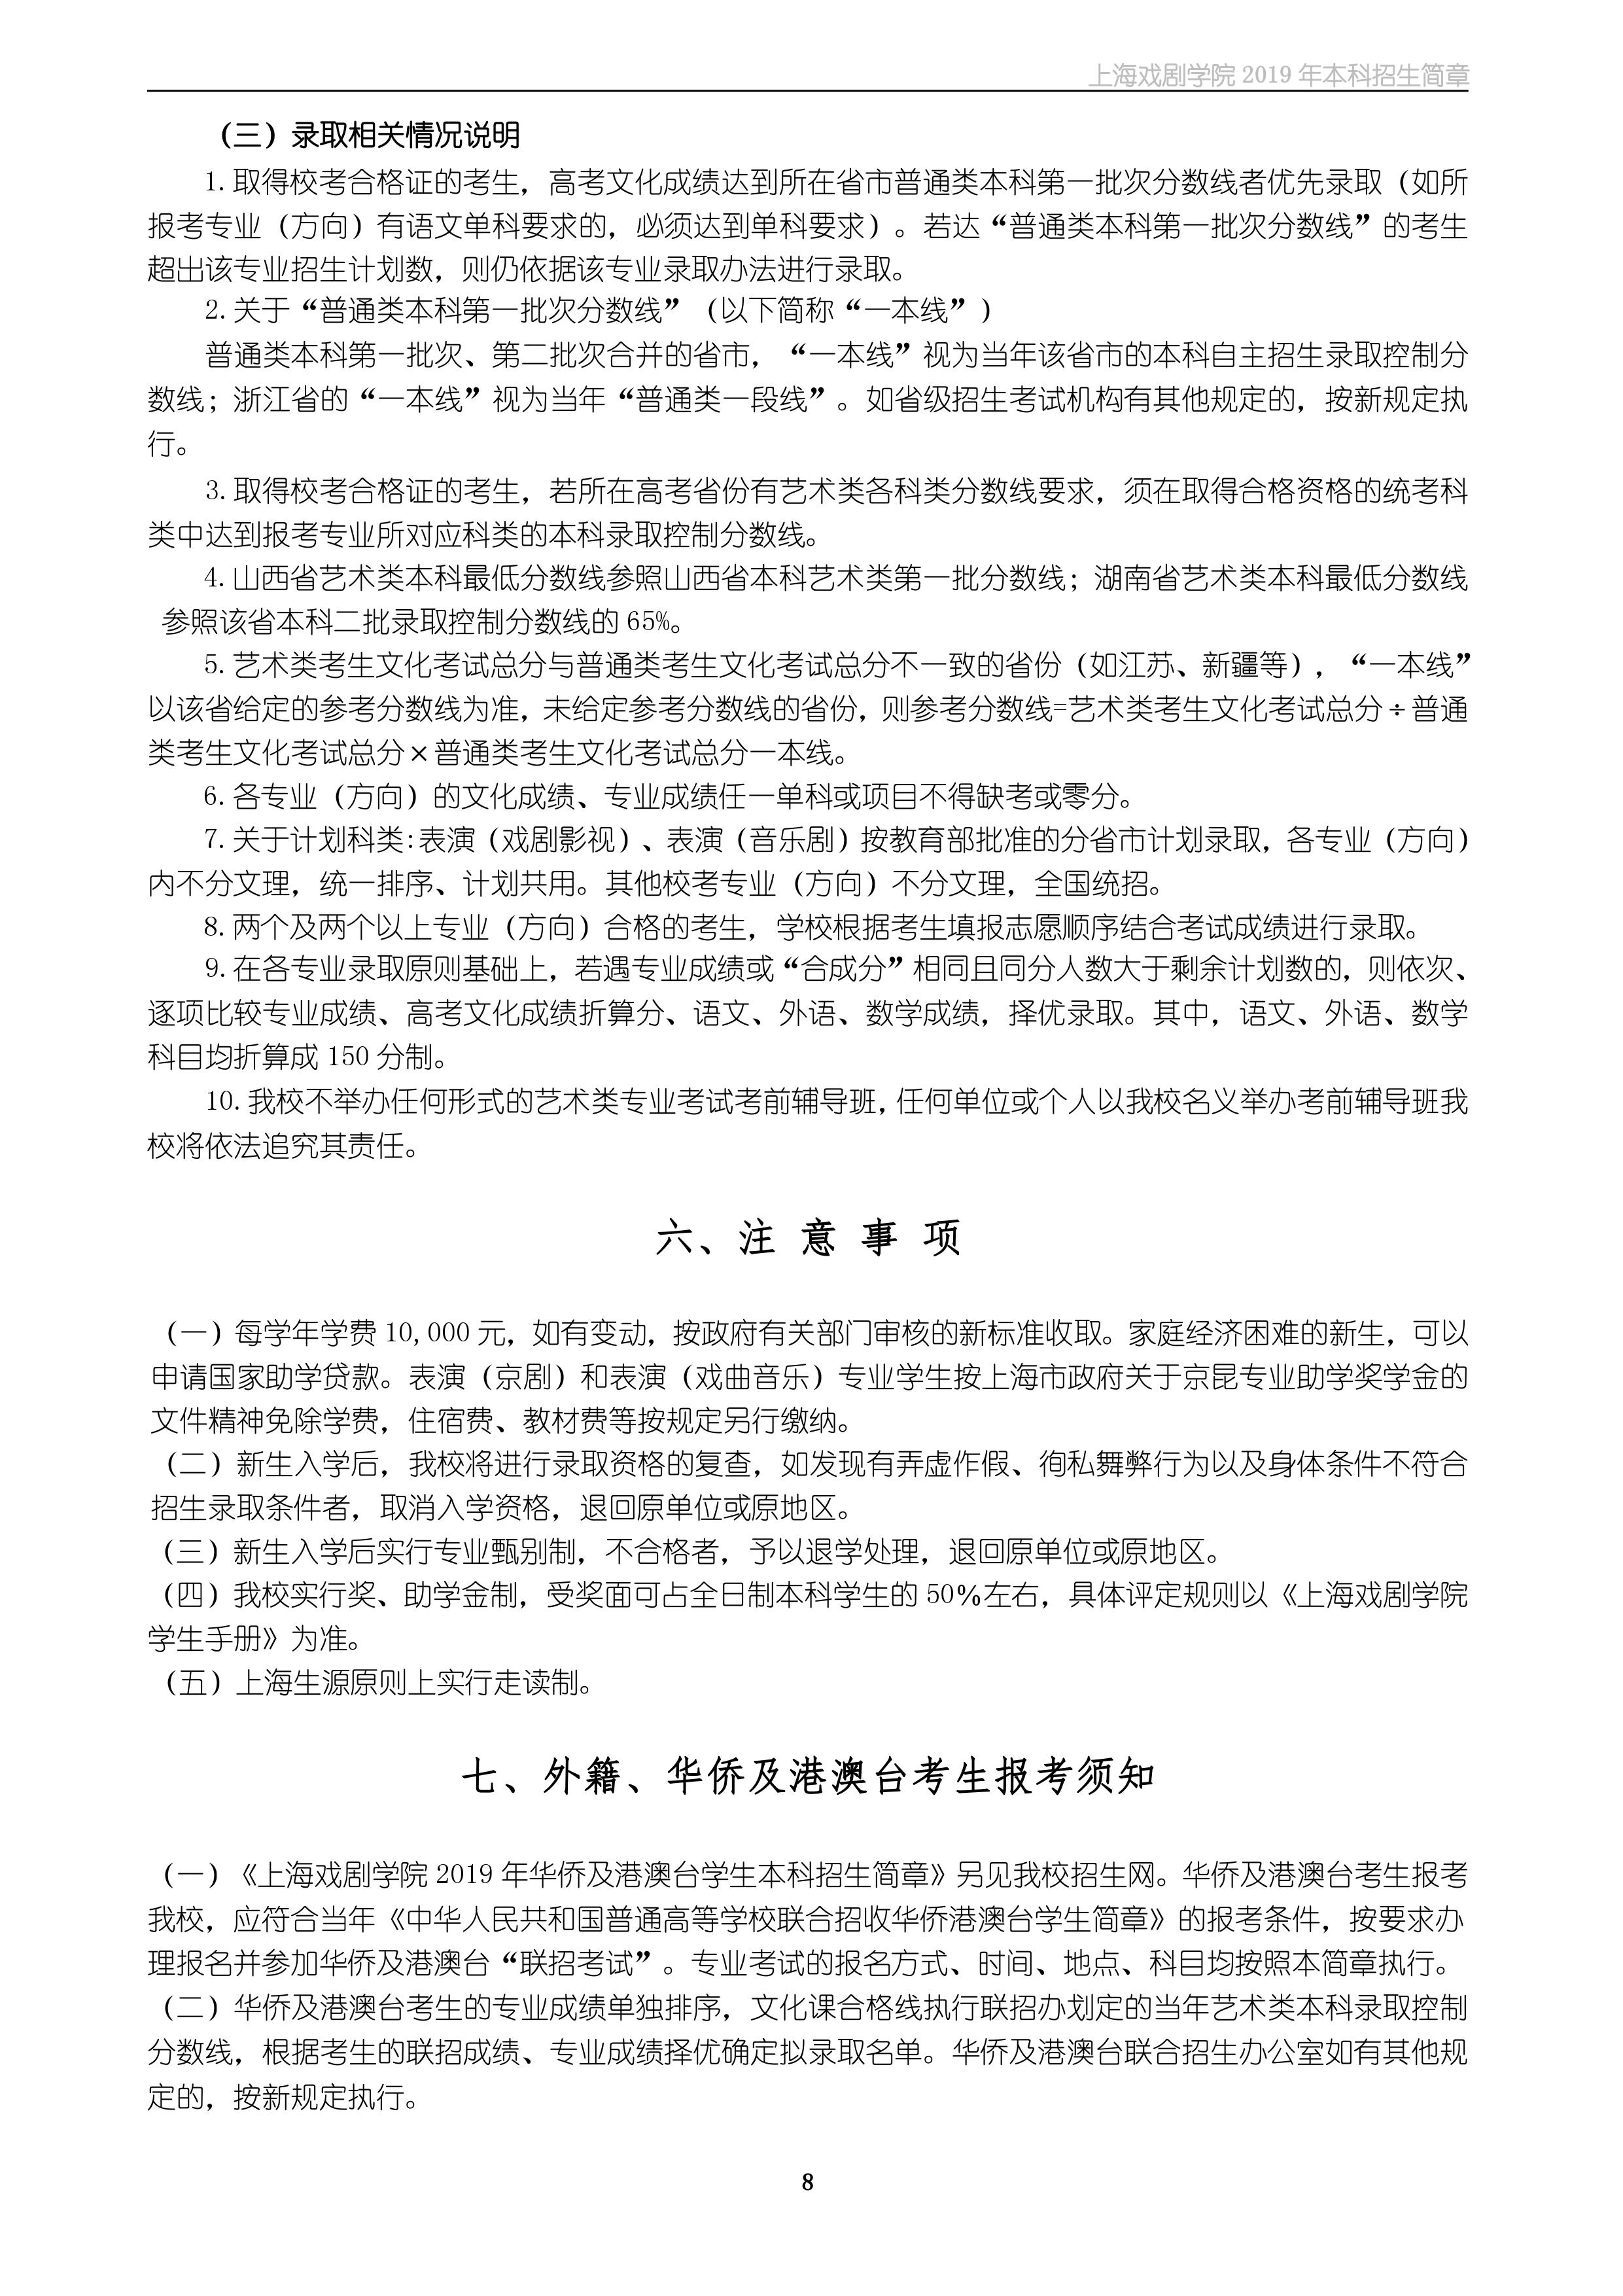 上海戏剧学院2019年本科招生简章 